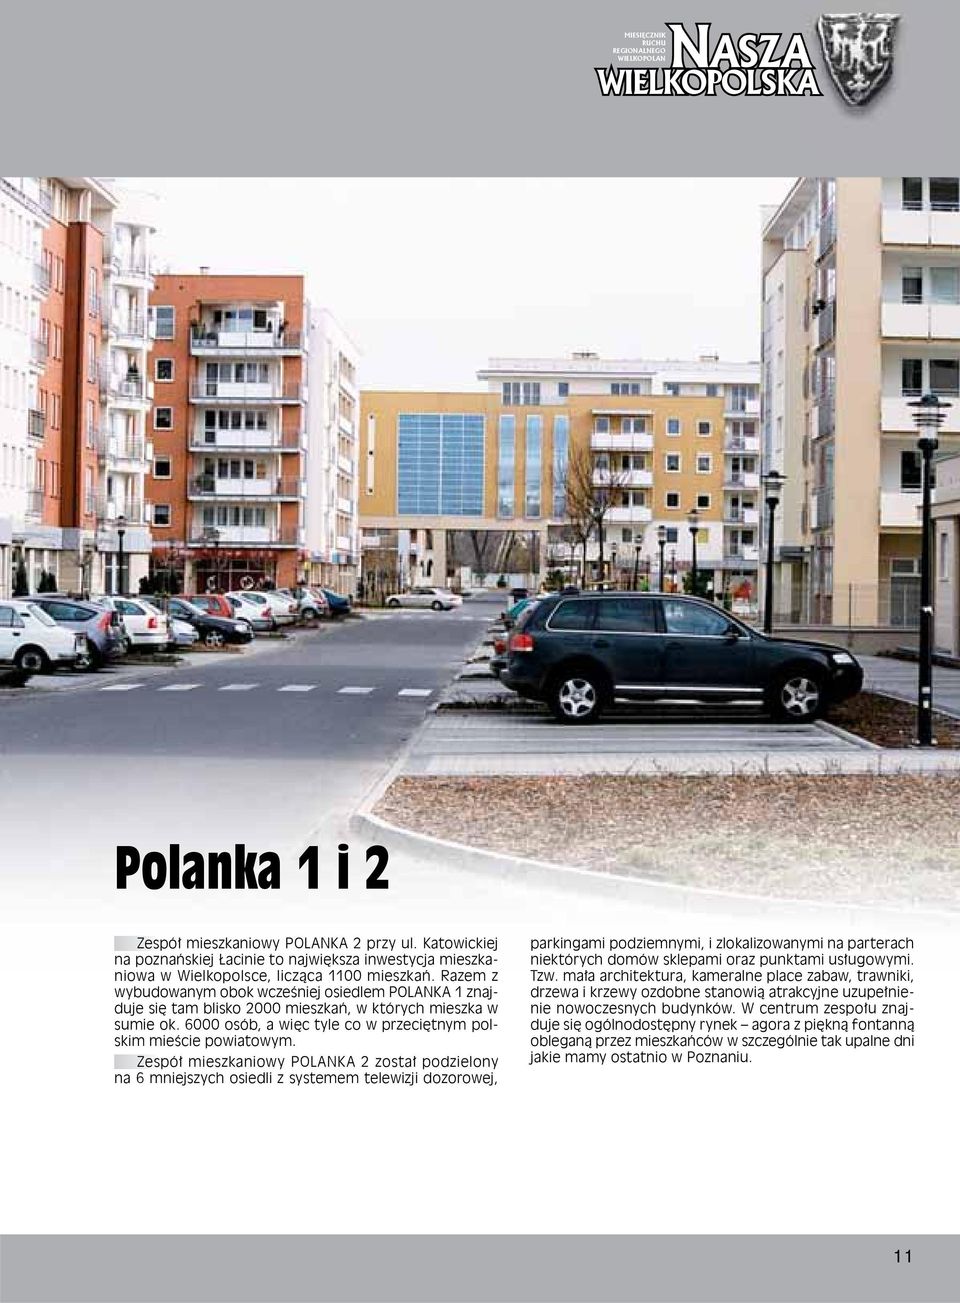 Razem z wybudowanym obok wcześniej osiedlem POLANKA 1 znajduje się tam blisko 2000 mieszkań, w których mieszka w sumie ok. 6000 osób, a więc tyle co w przeciętnym polskim mieście powiatowym.